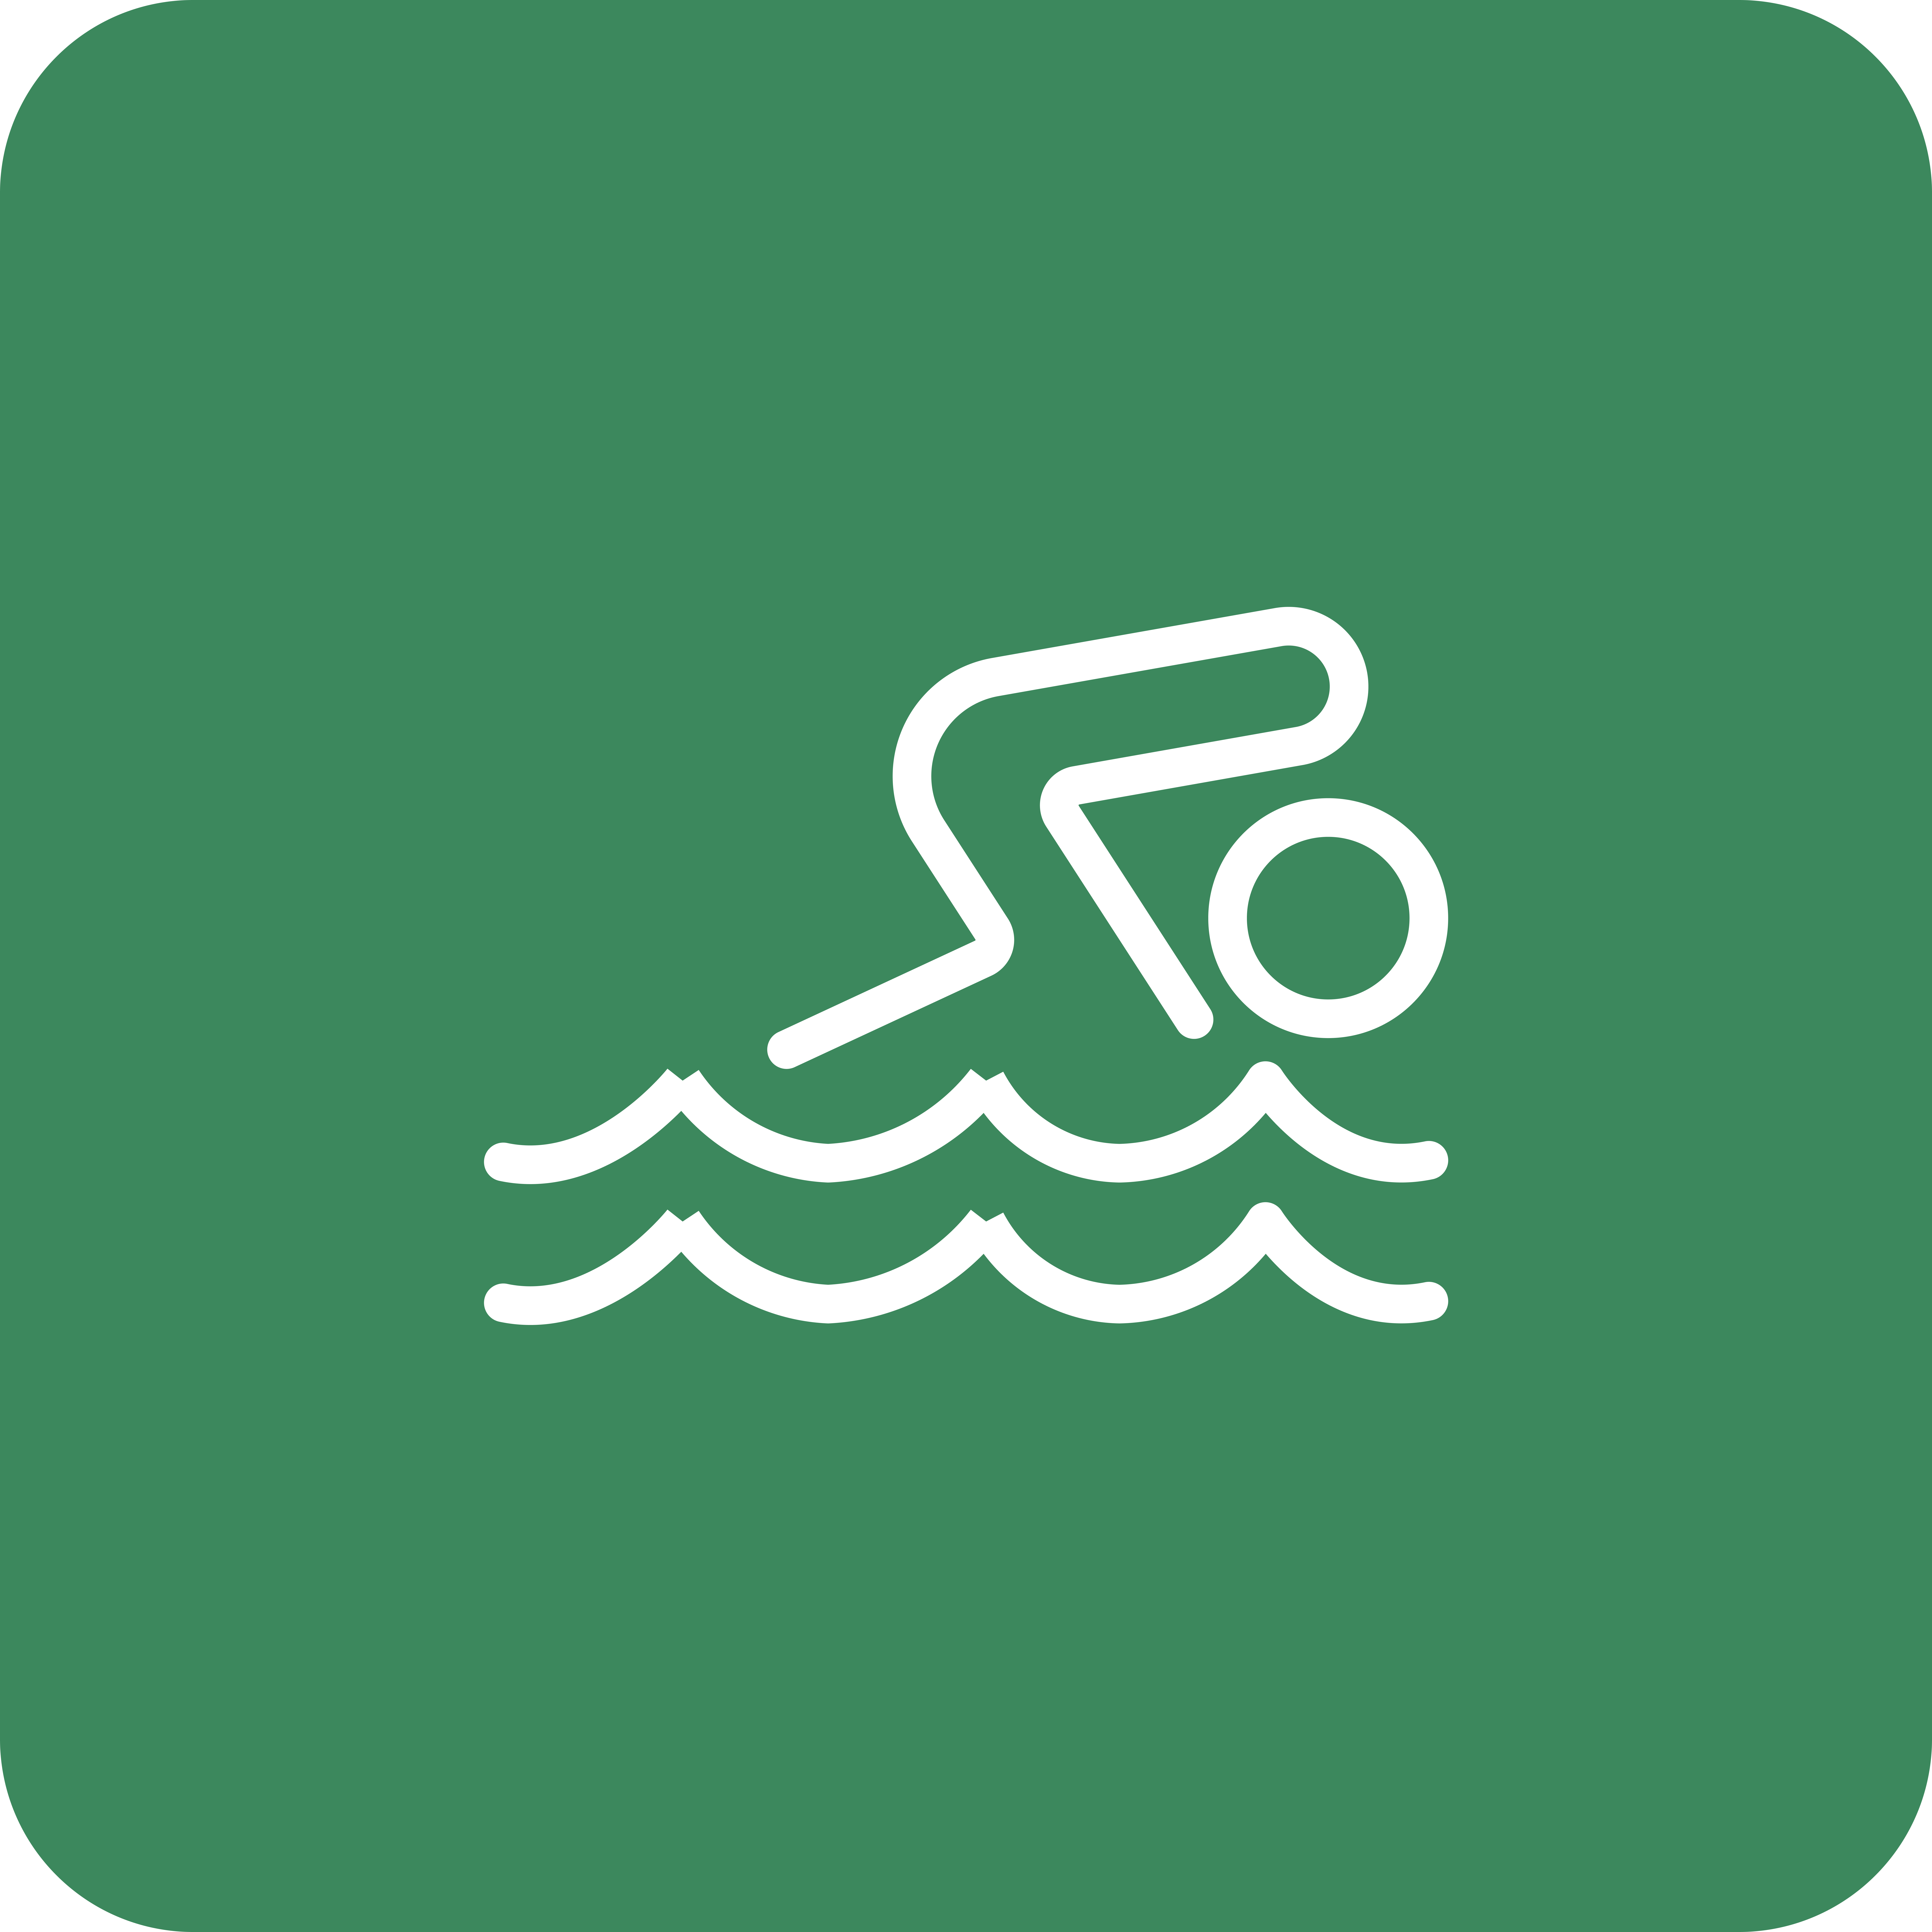 Swim Team activity icon